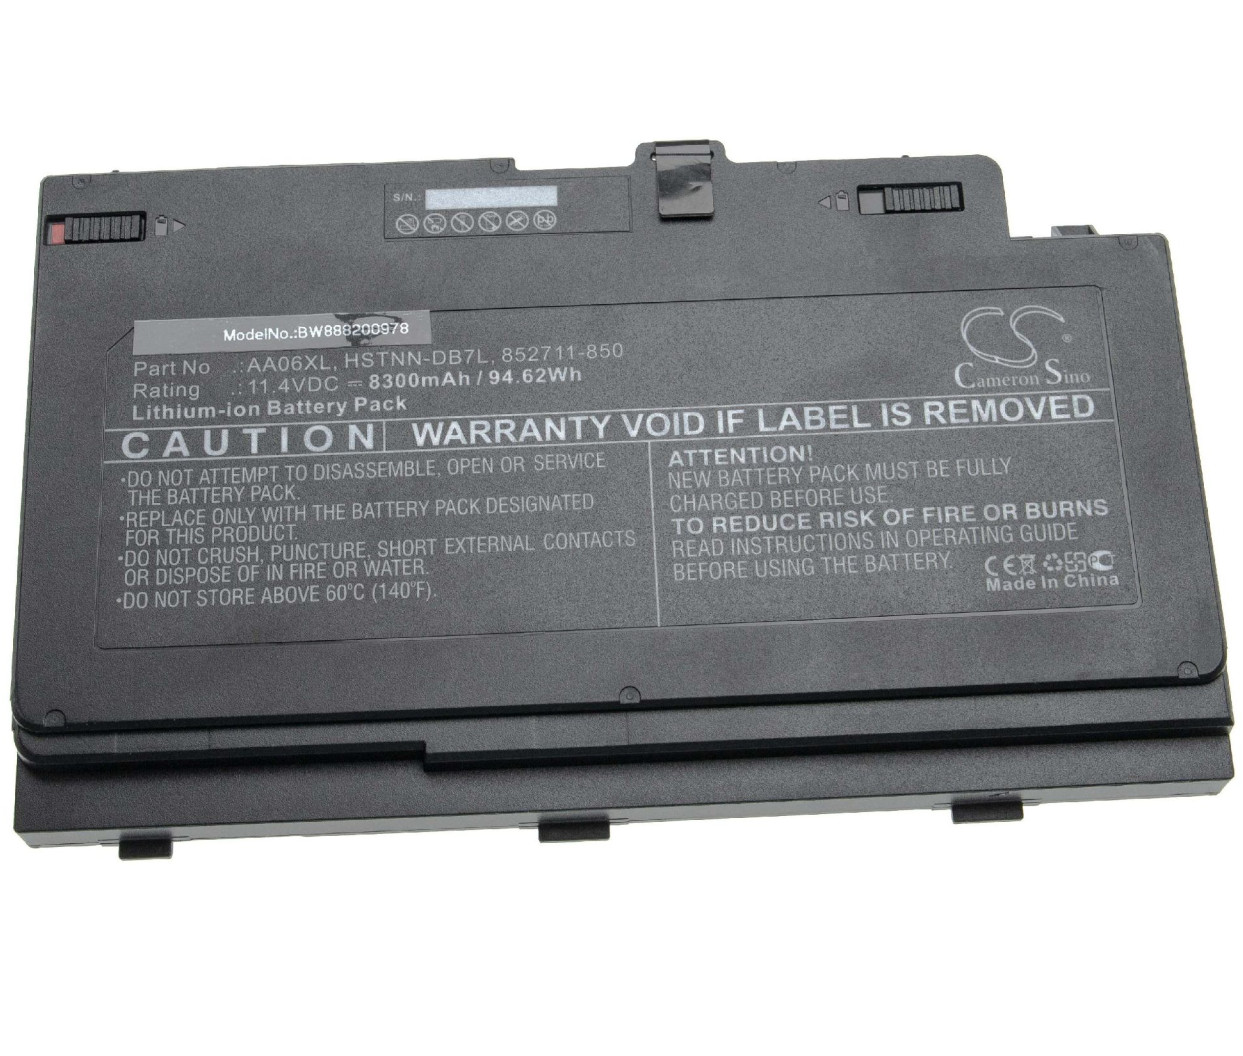 Baterija za HP ZBook 17 G3 in 17 G4 - 11,4V 8300mAh